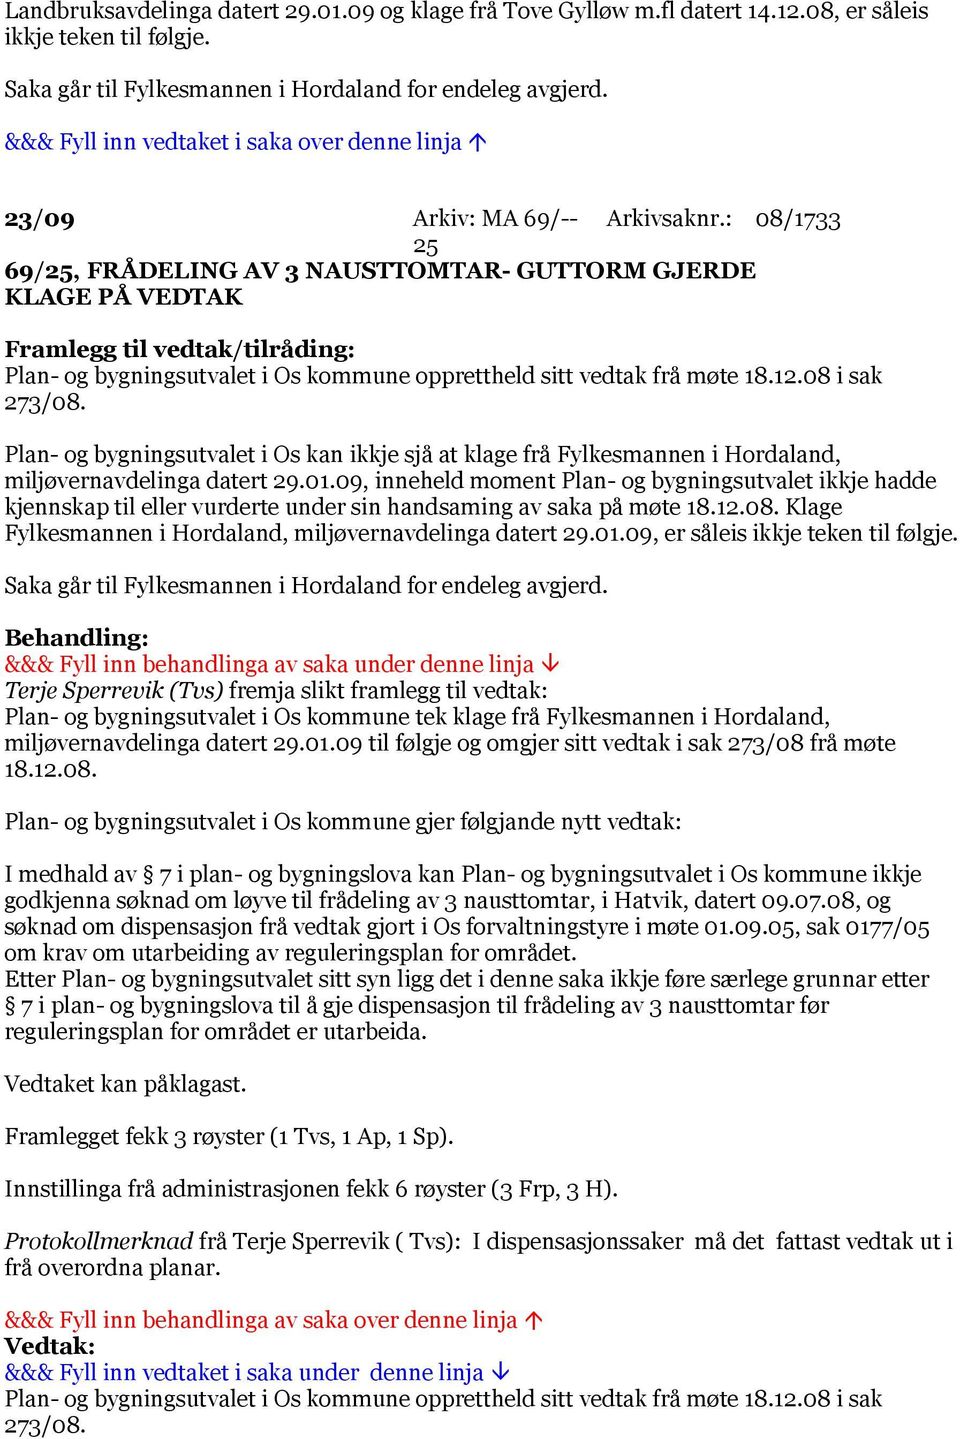 Plan- og bygningsutvalet i Os kan ikkje sjå at klage frå Fylkesmannen i Hordaland, miljøvernavdelinga datert 29.01.